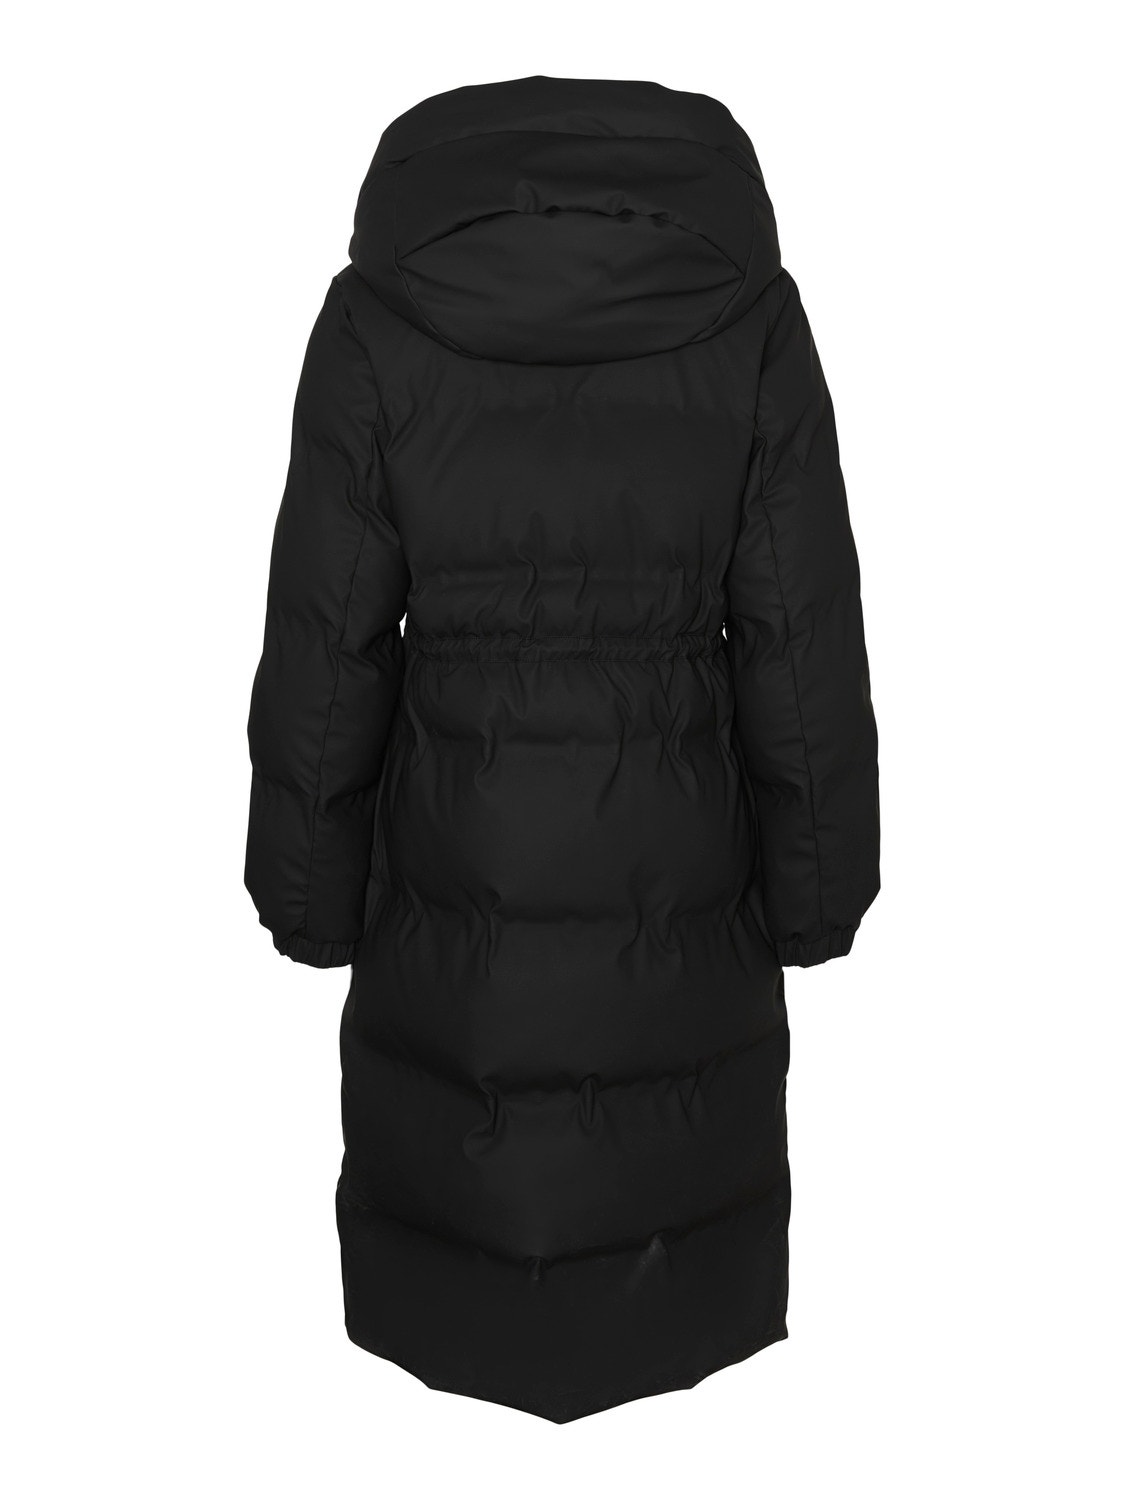 Vero Moda VMNOE Coat -Black - 10307841